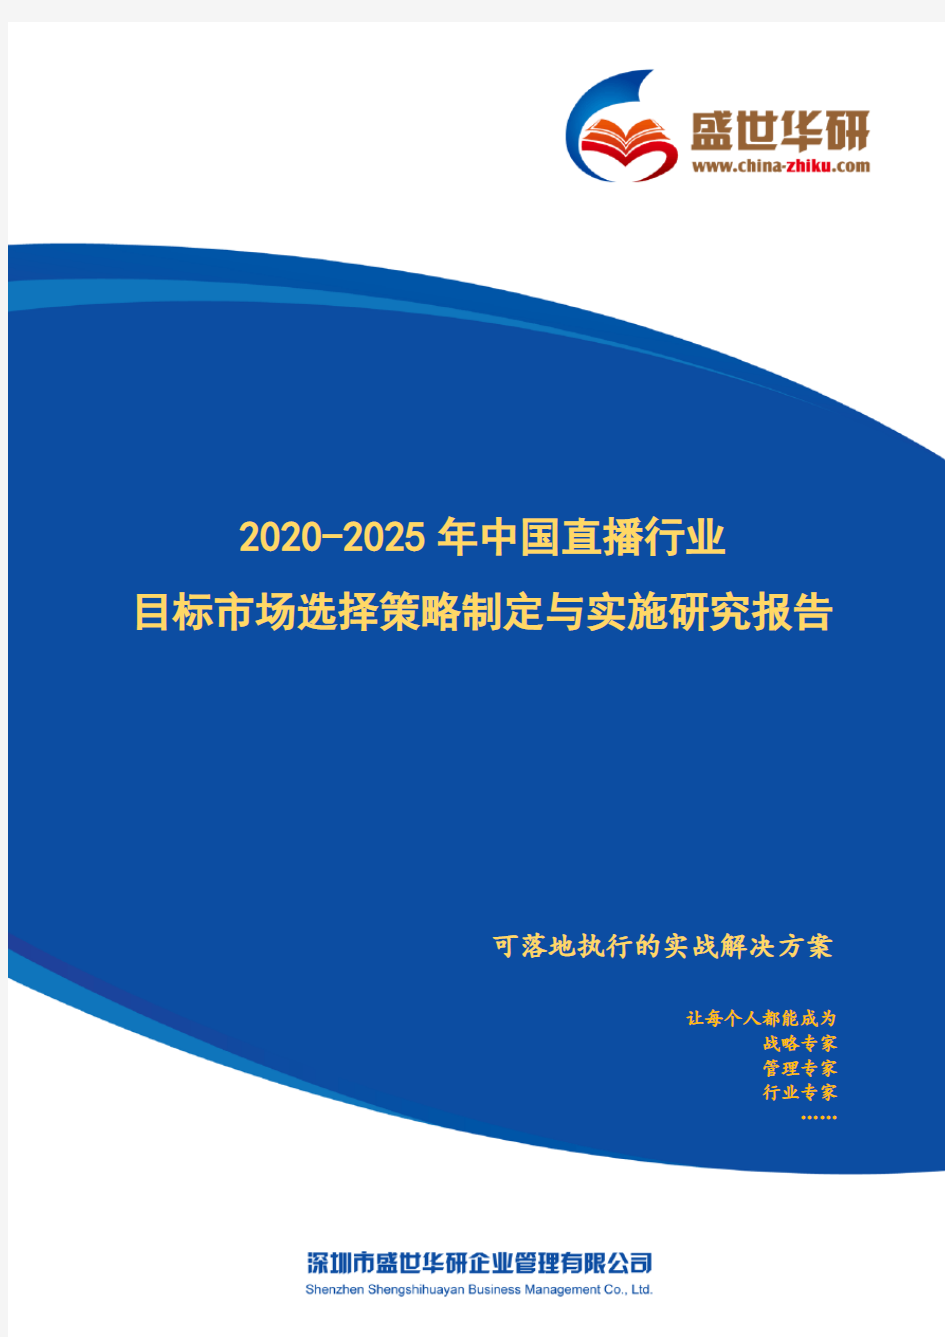 【完整版】2020-2025年中国直播行业目标市场选择策略制定与实施研究报告